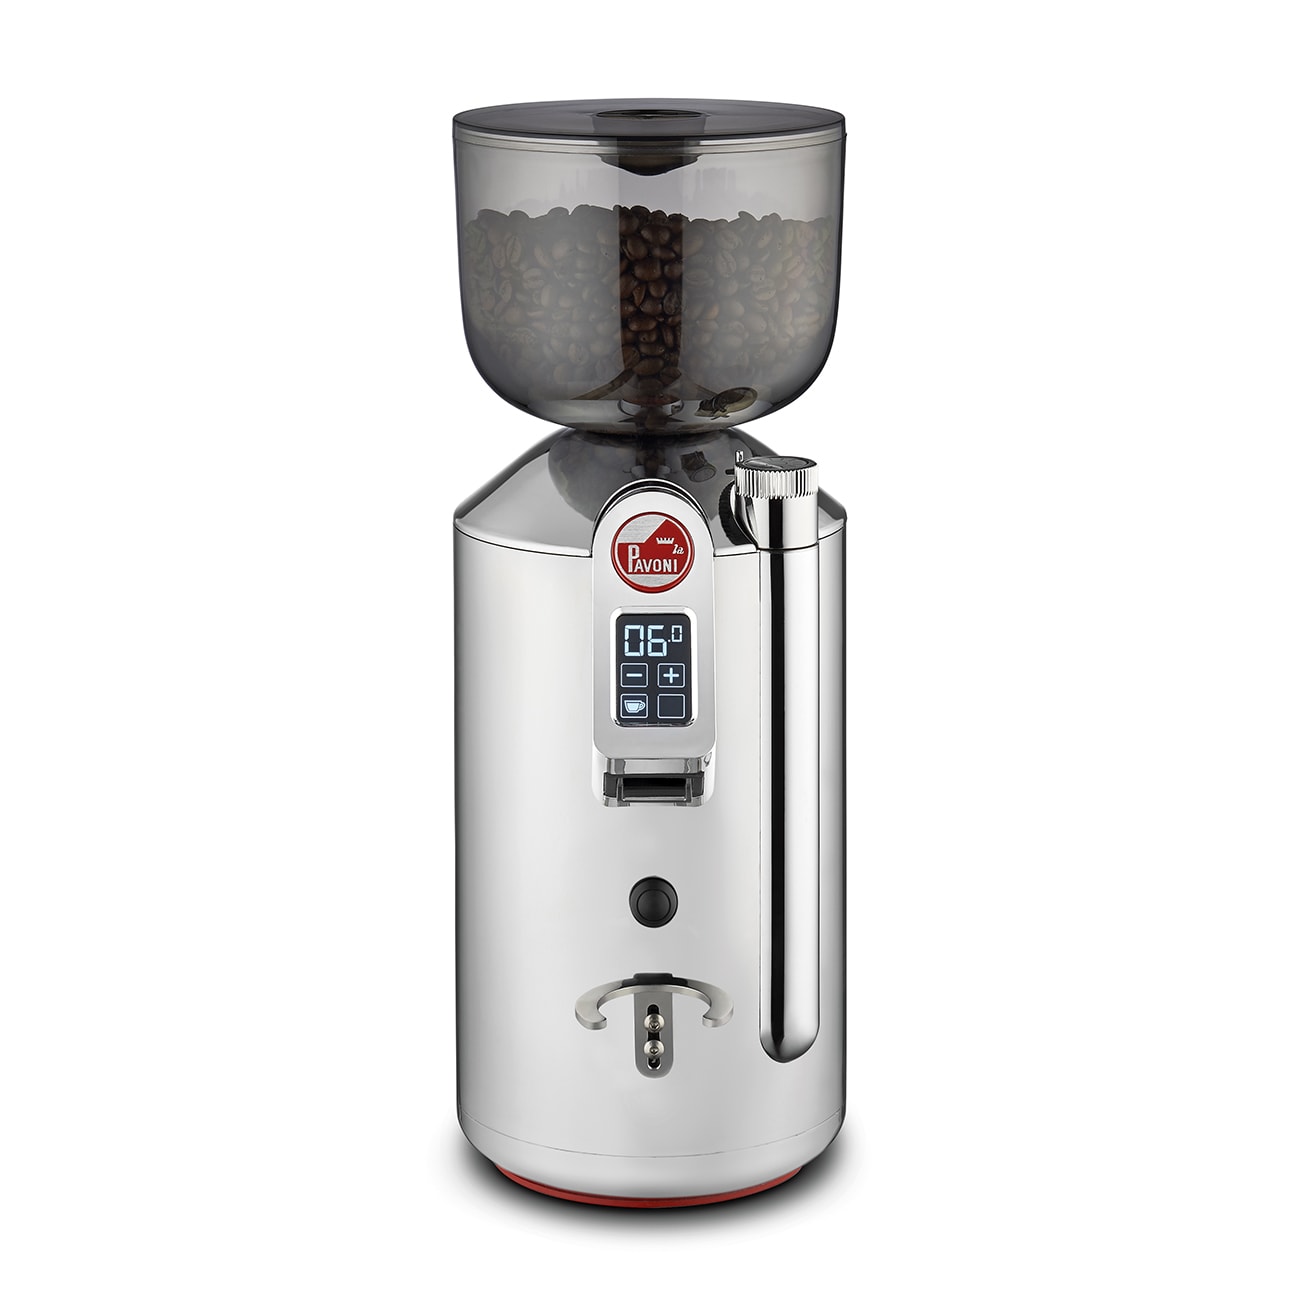 Młynek do kawy, 3 tryby - 1 porcja, 2 porcje, ręczny, pojemność: 500g, moc: 310 W, dotykowy wyświetlacz LCD, wymiary (SxGxW): 154x230x410 mm